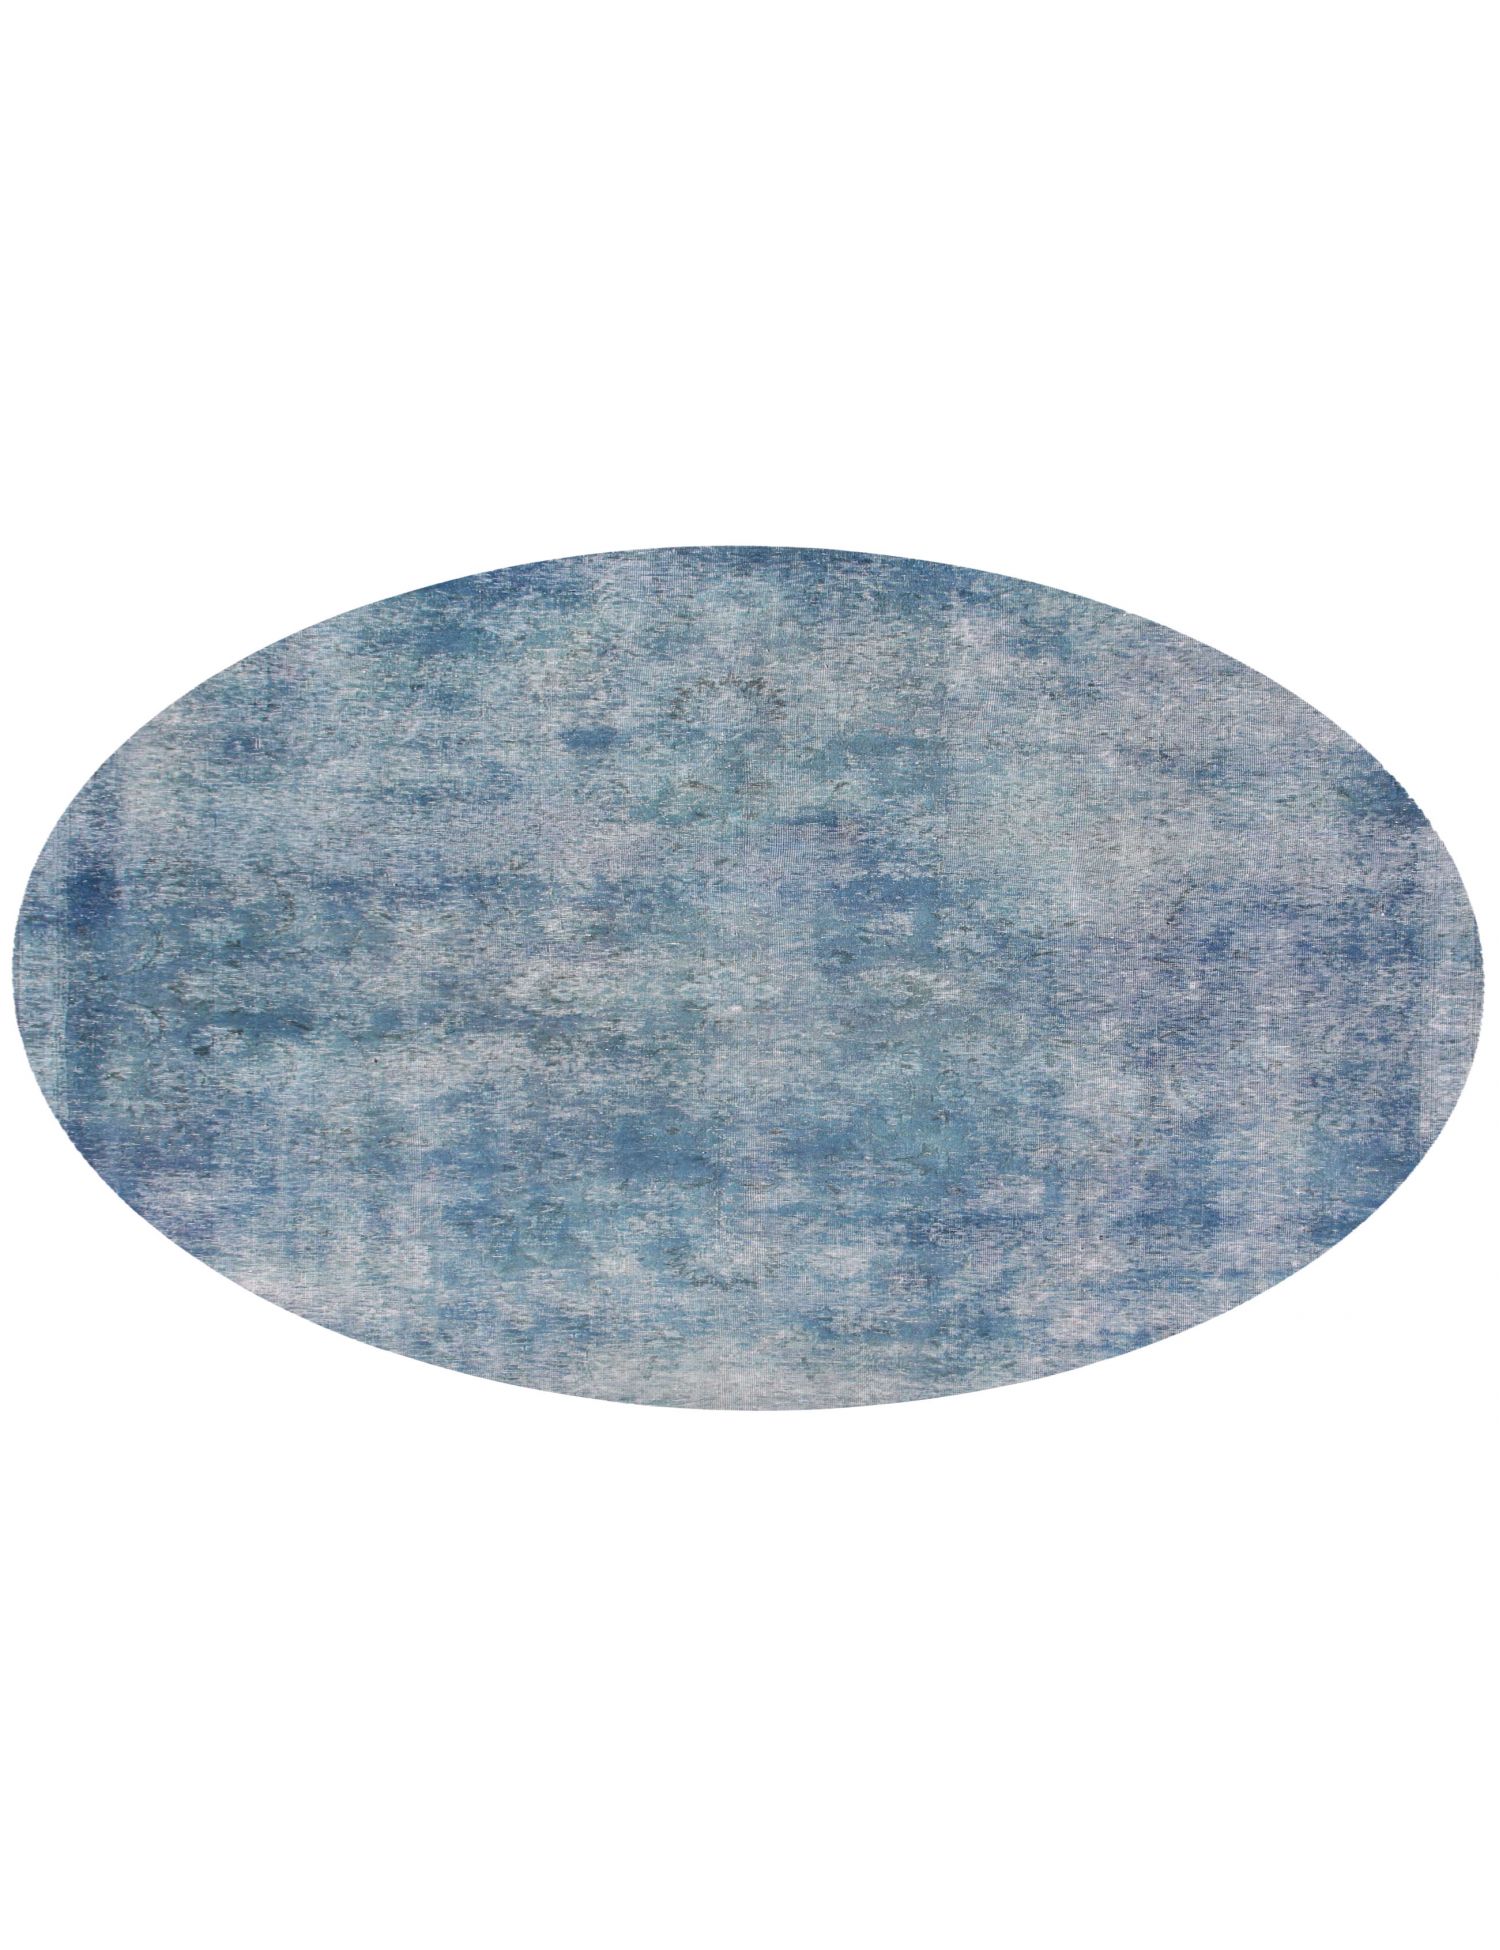 Rund  Vintage Teppich  blau <br/>245 x 245 cm